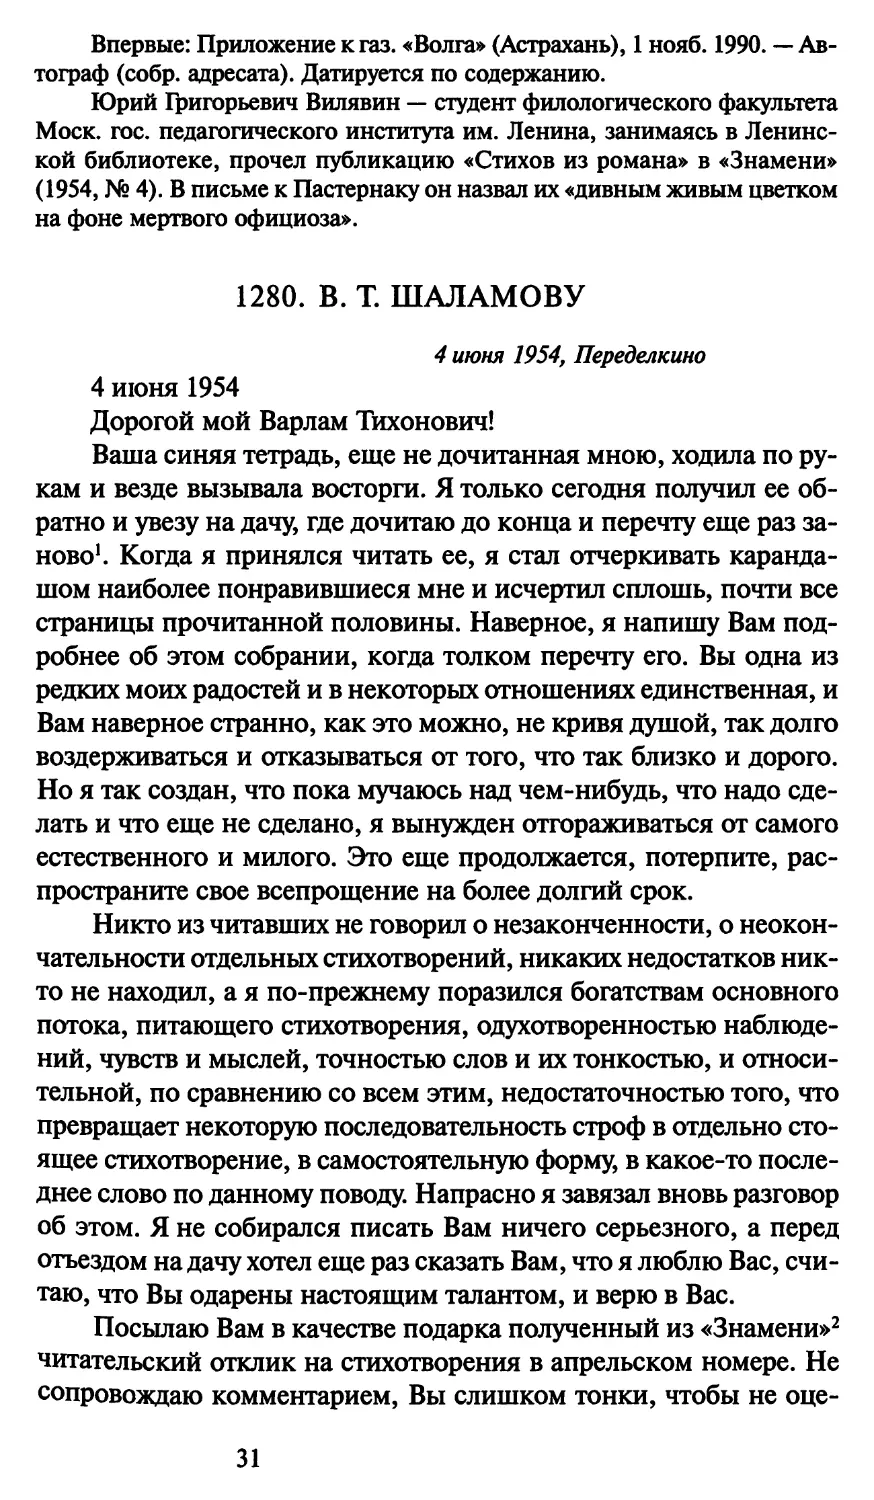 1280. В. Т. Шаламову 4 июня 1954